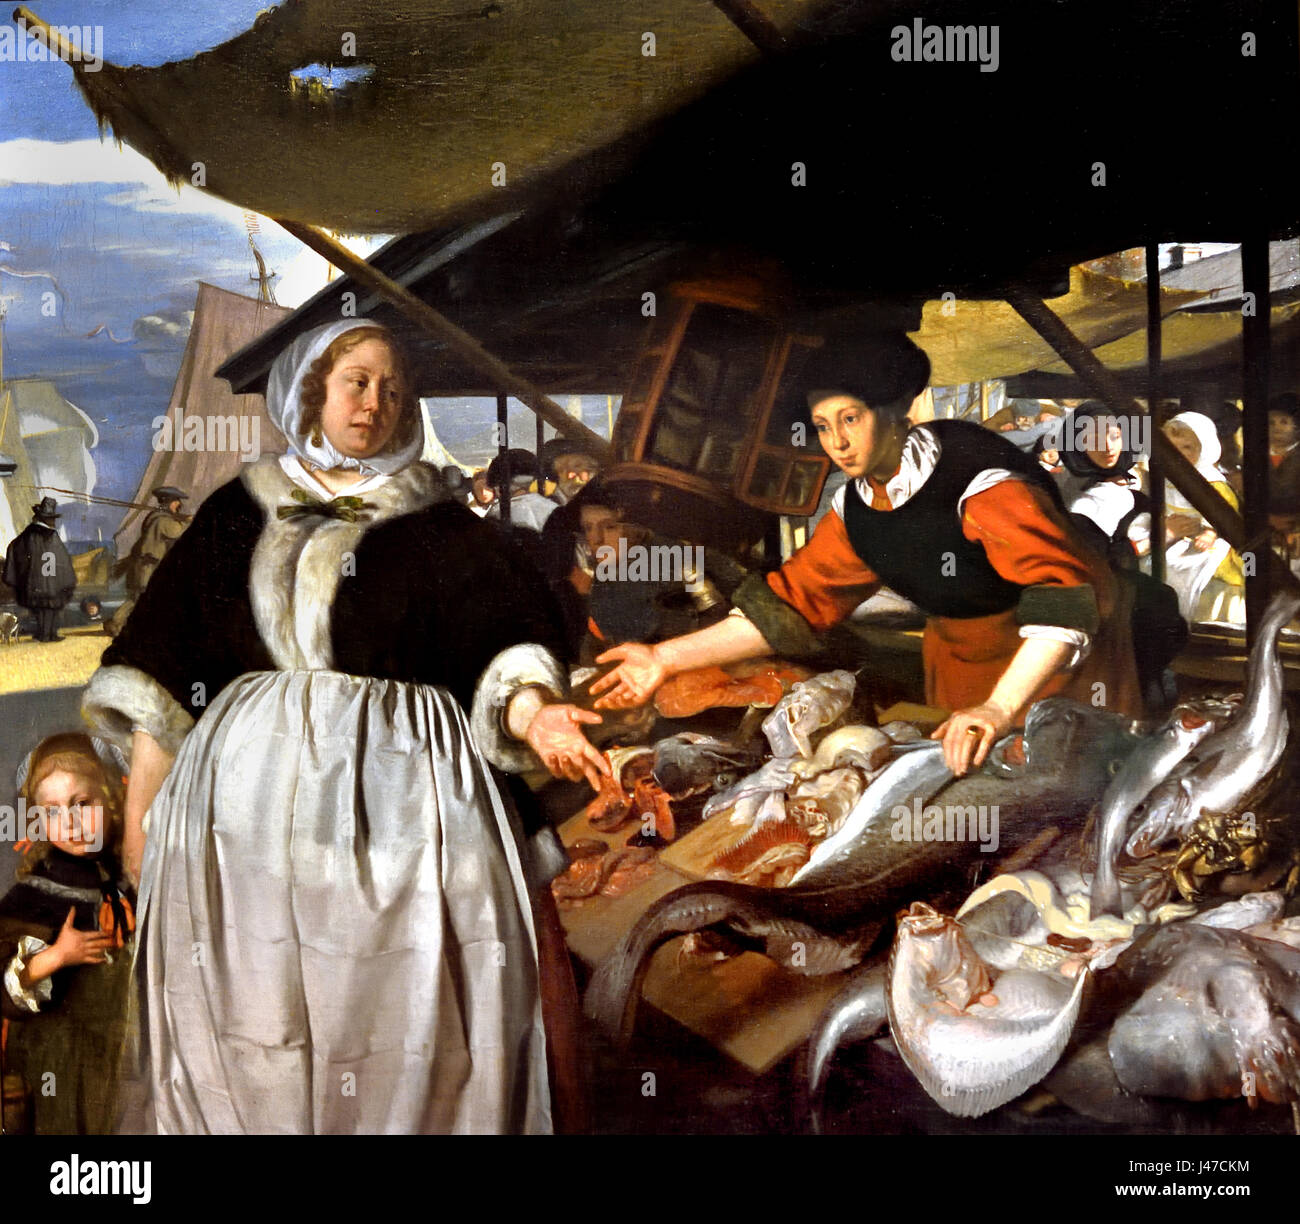 Adriana van Heusden e hija en el mercado de pescado de 1662 Emanuel De Witte 1616-1618 holandés, los Países Bajos, Foto de stock